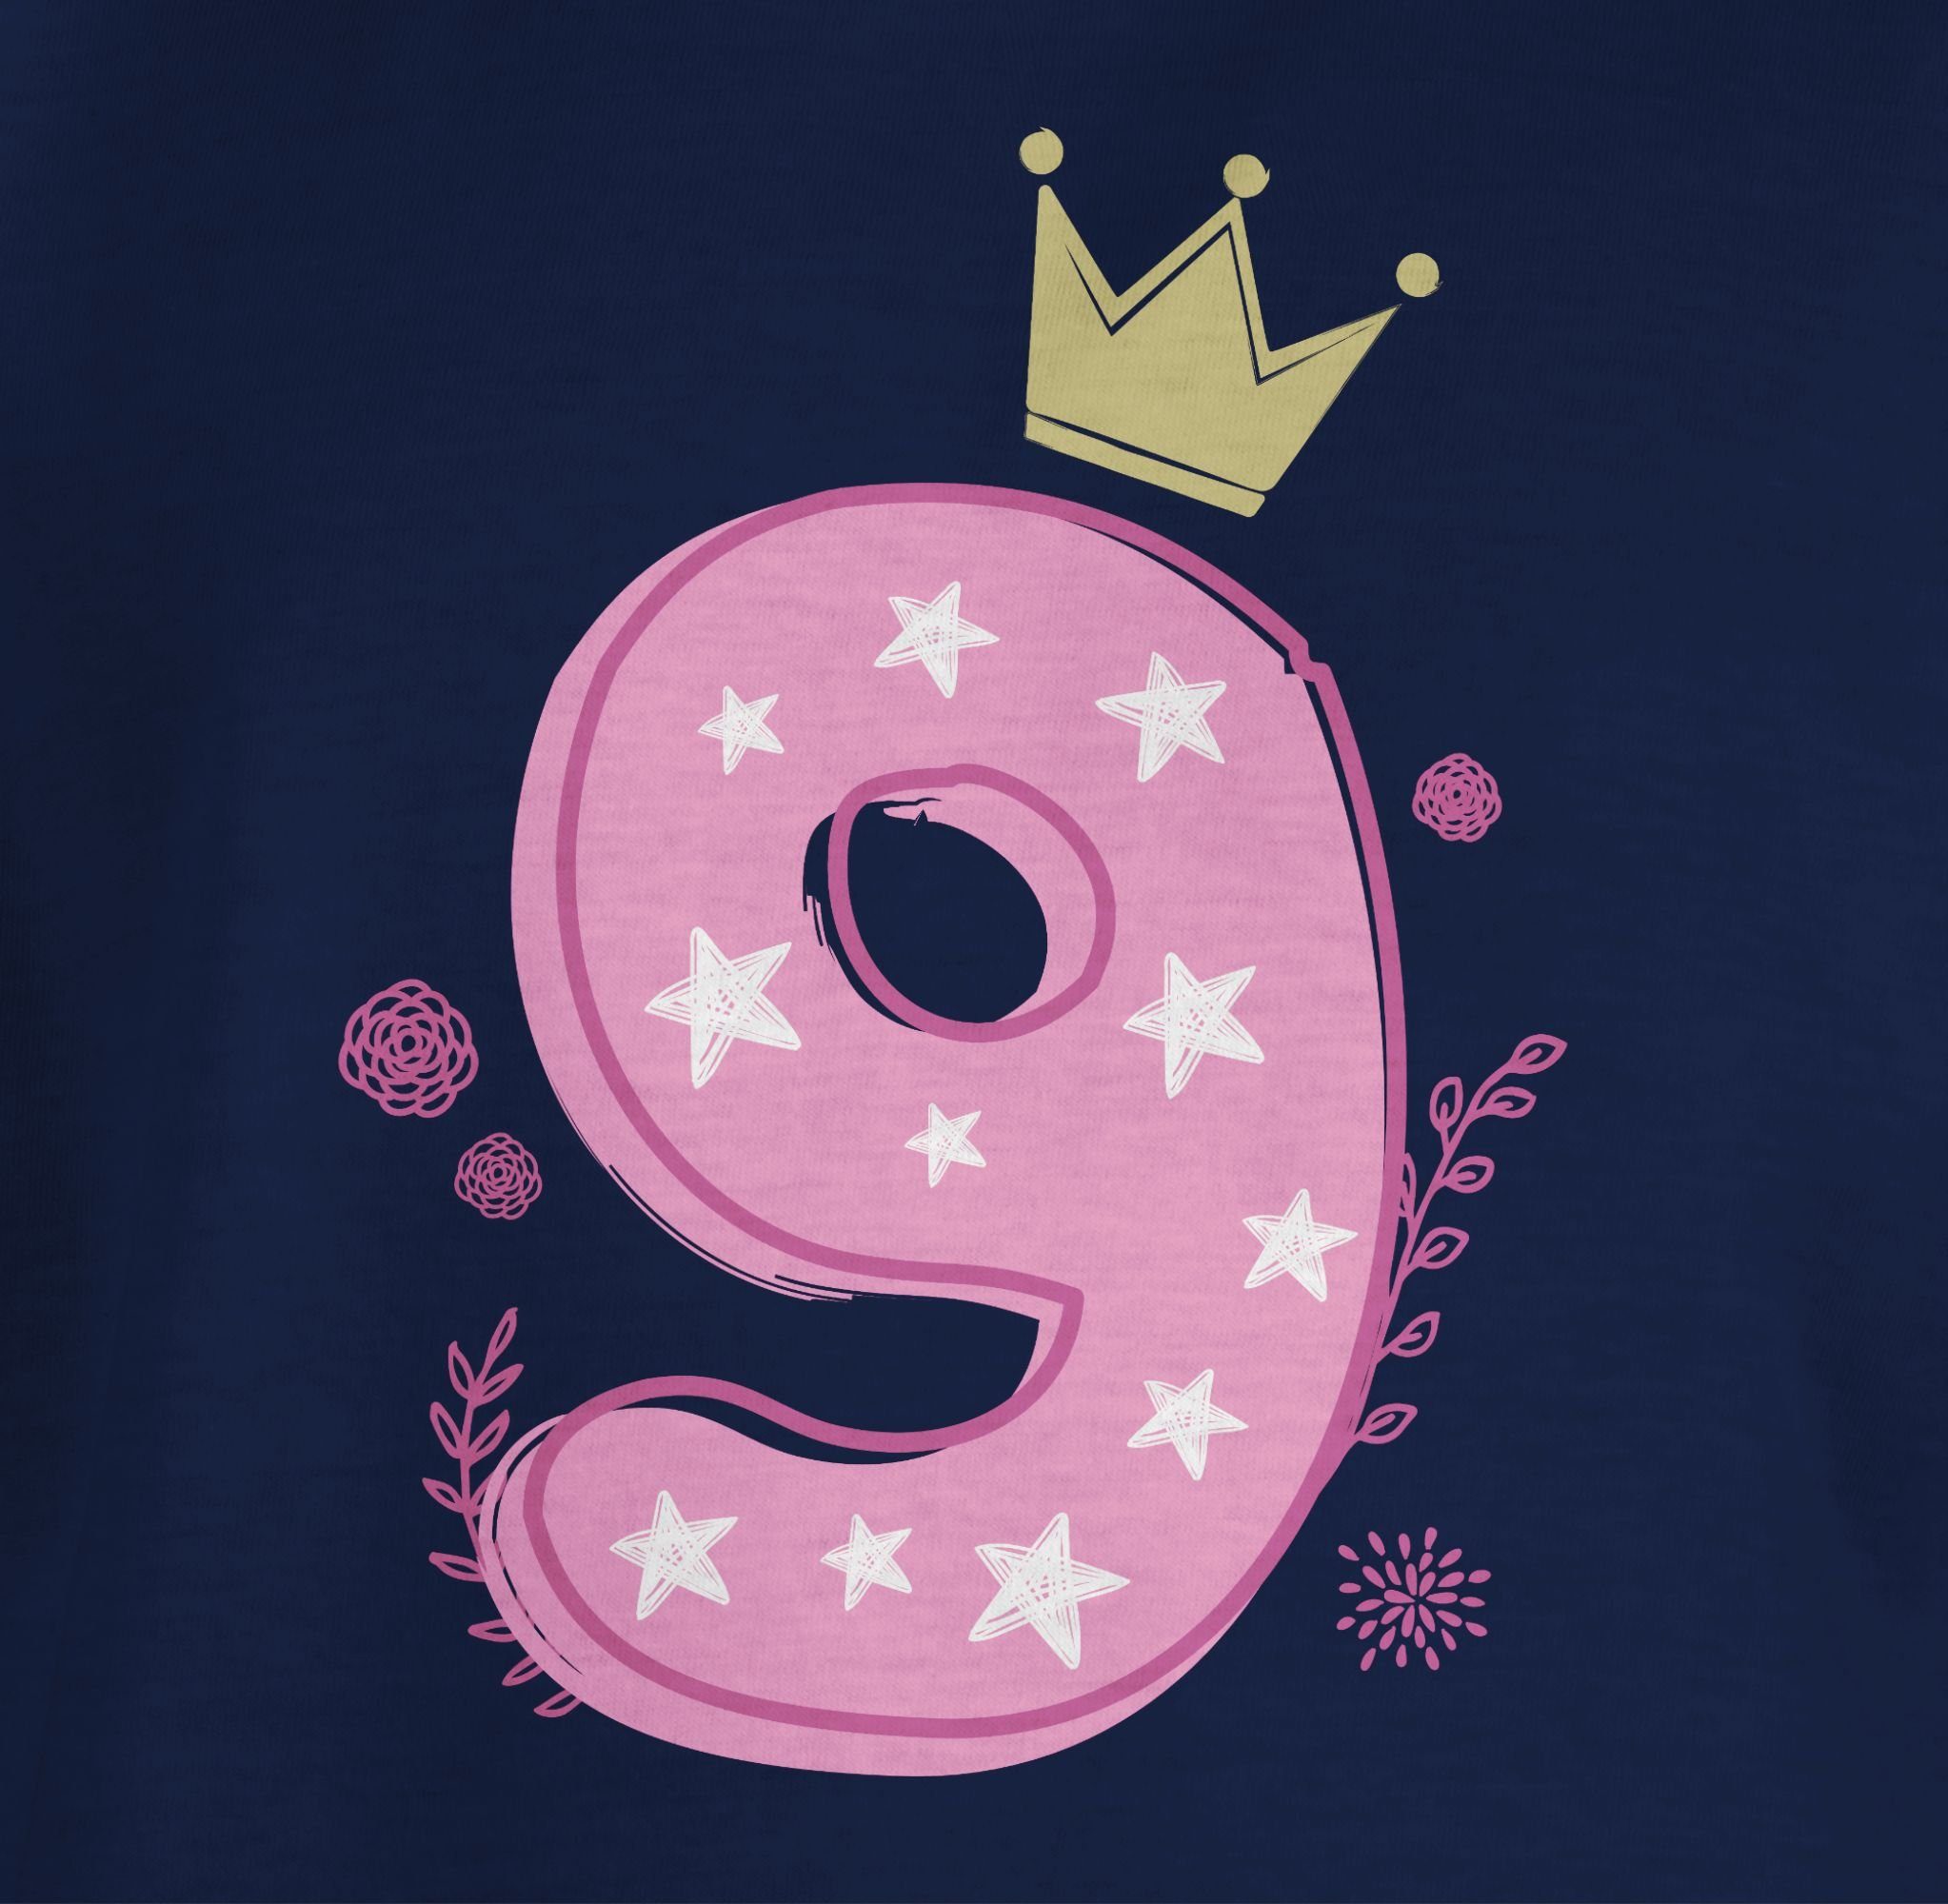 Shirtracer T-Shirt Neunter 1 9. Mädchen Krone Geburtstag Dunkelblau Sterne